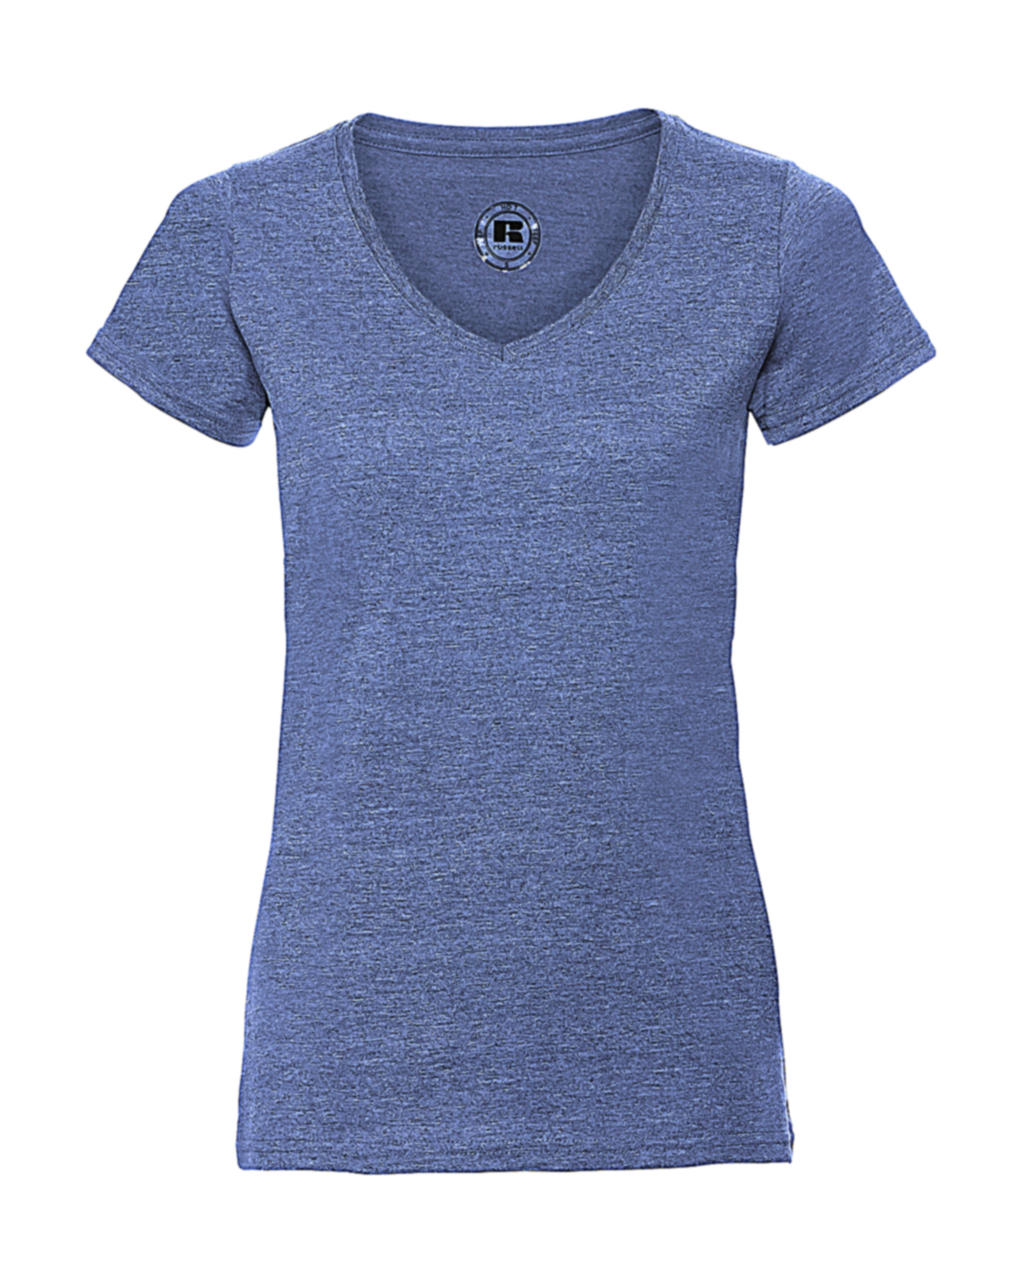 Dámske tričko HD s V-výstrihom - blue marl